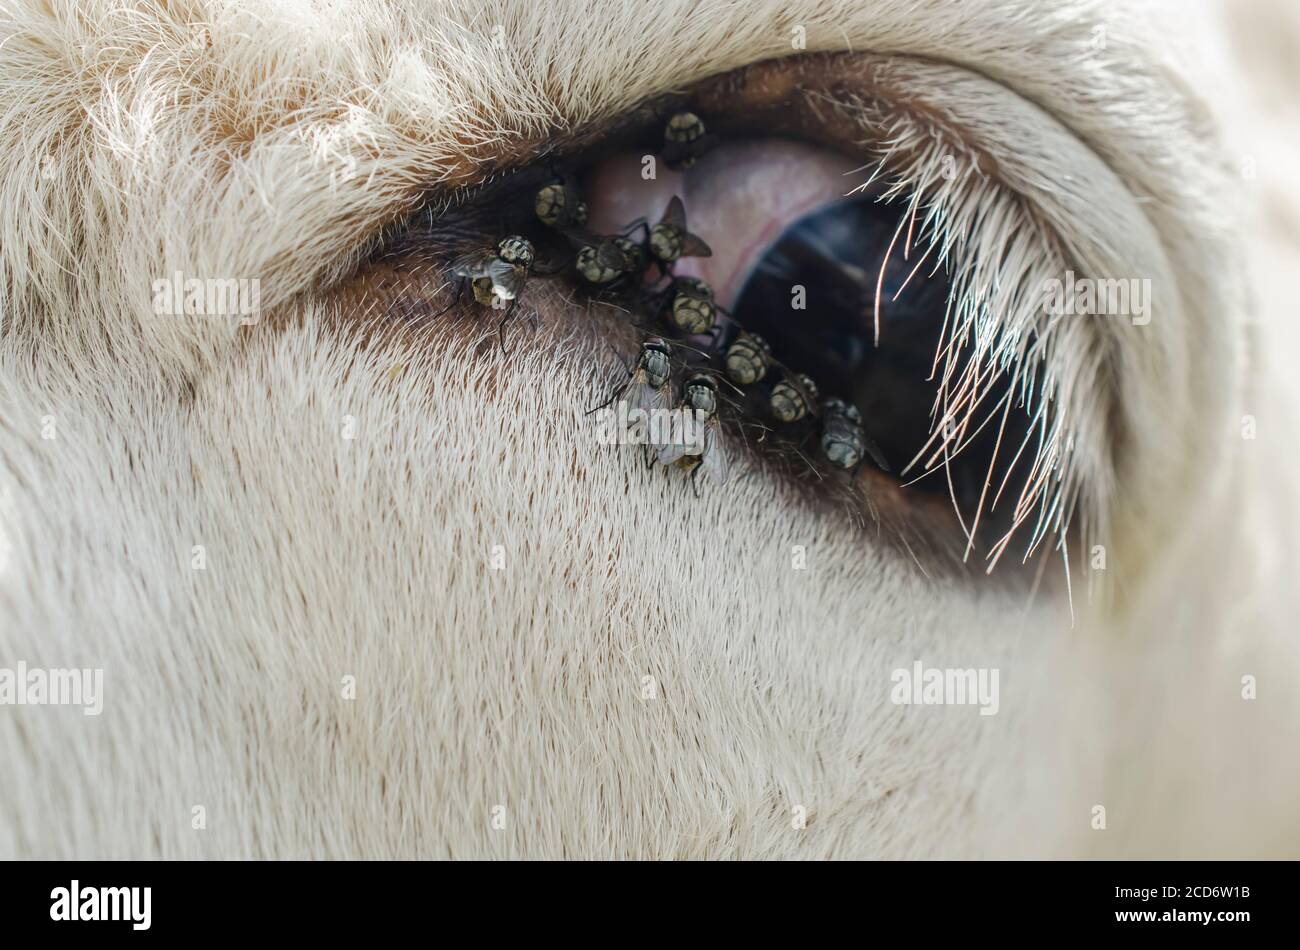 Kuh mit Fliegen um das Auge, Nahaufnahme Kuhauge Stockfotografie - Alamy